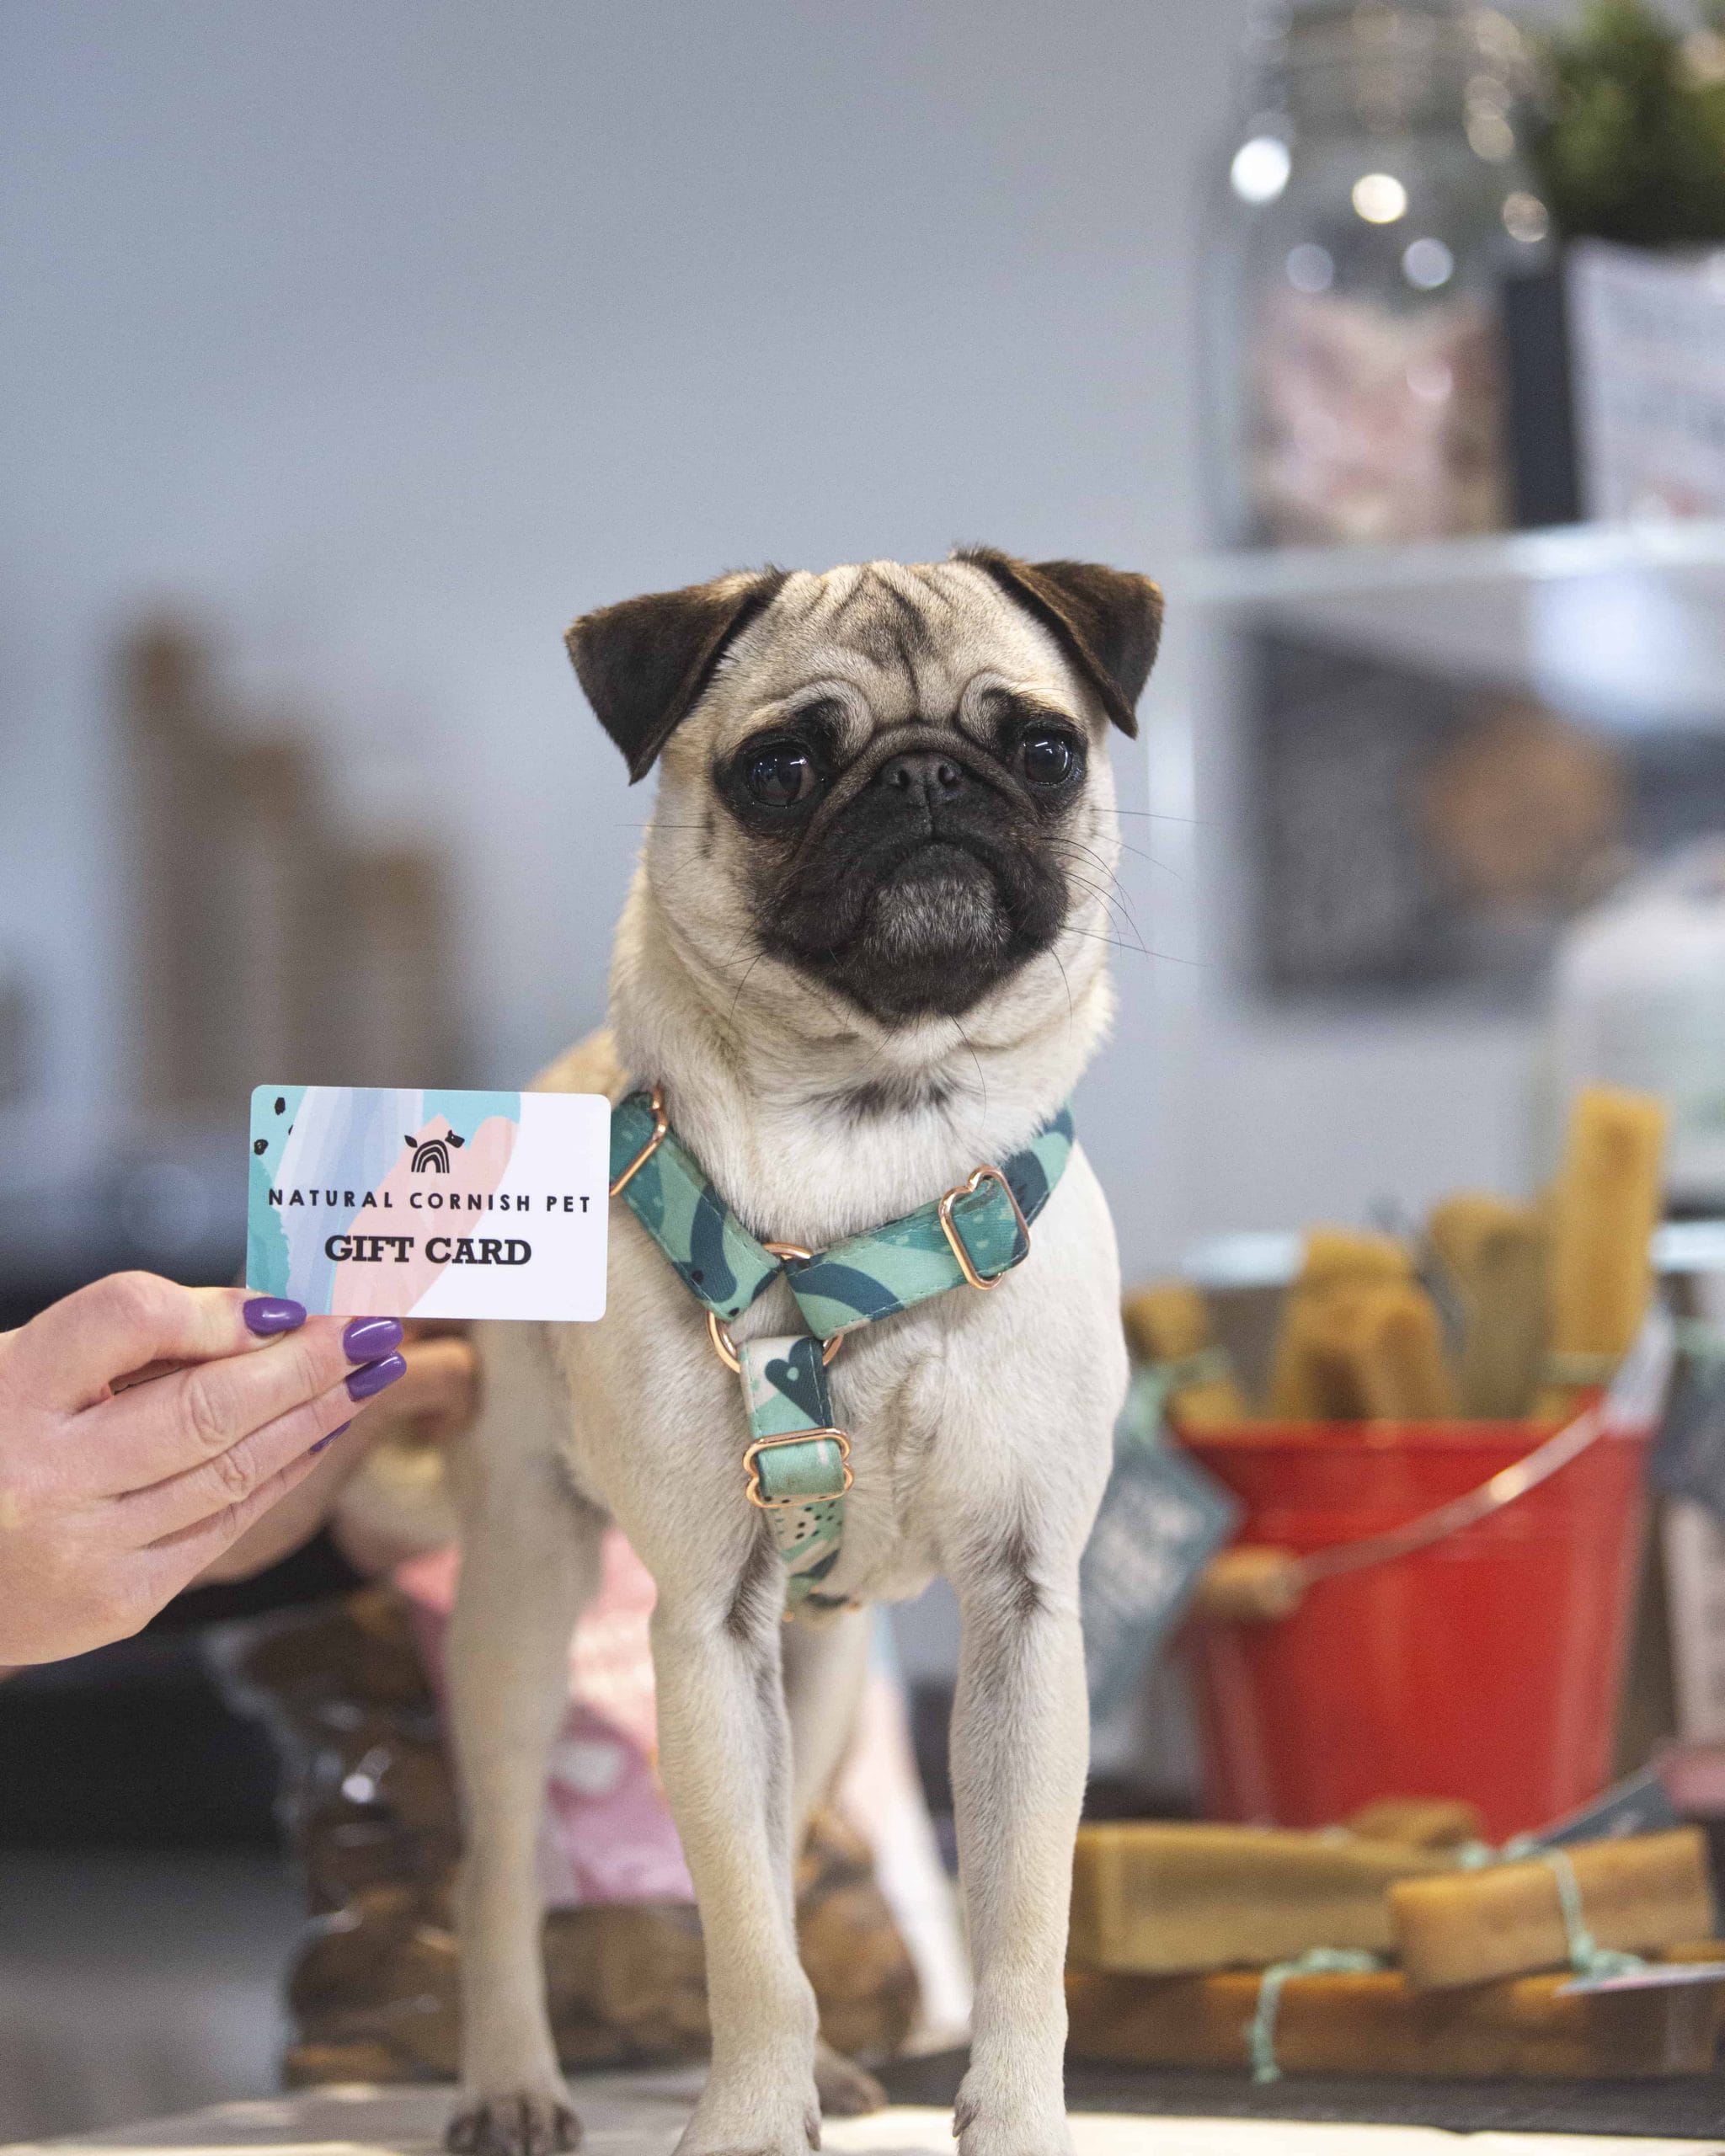 Natural Cornish Pet Shop Loyalty Card